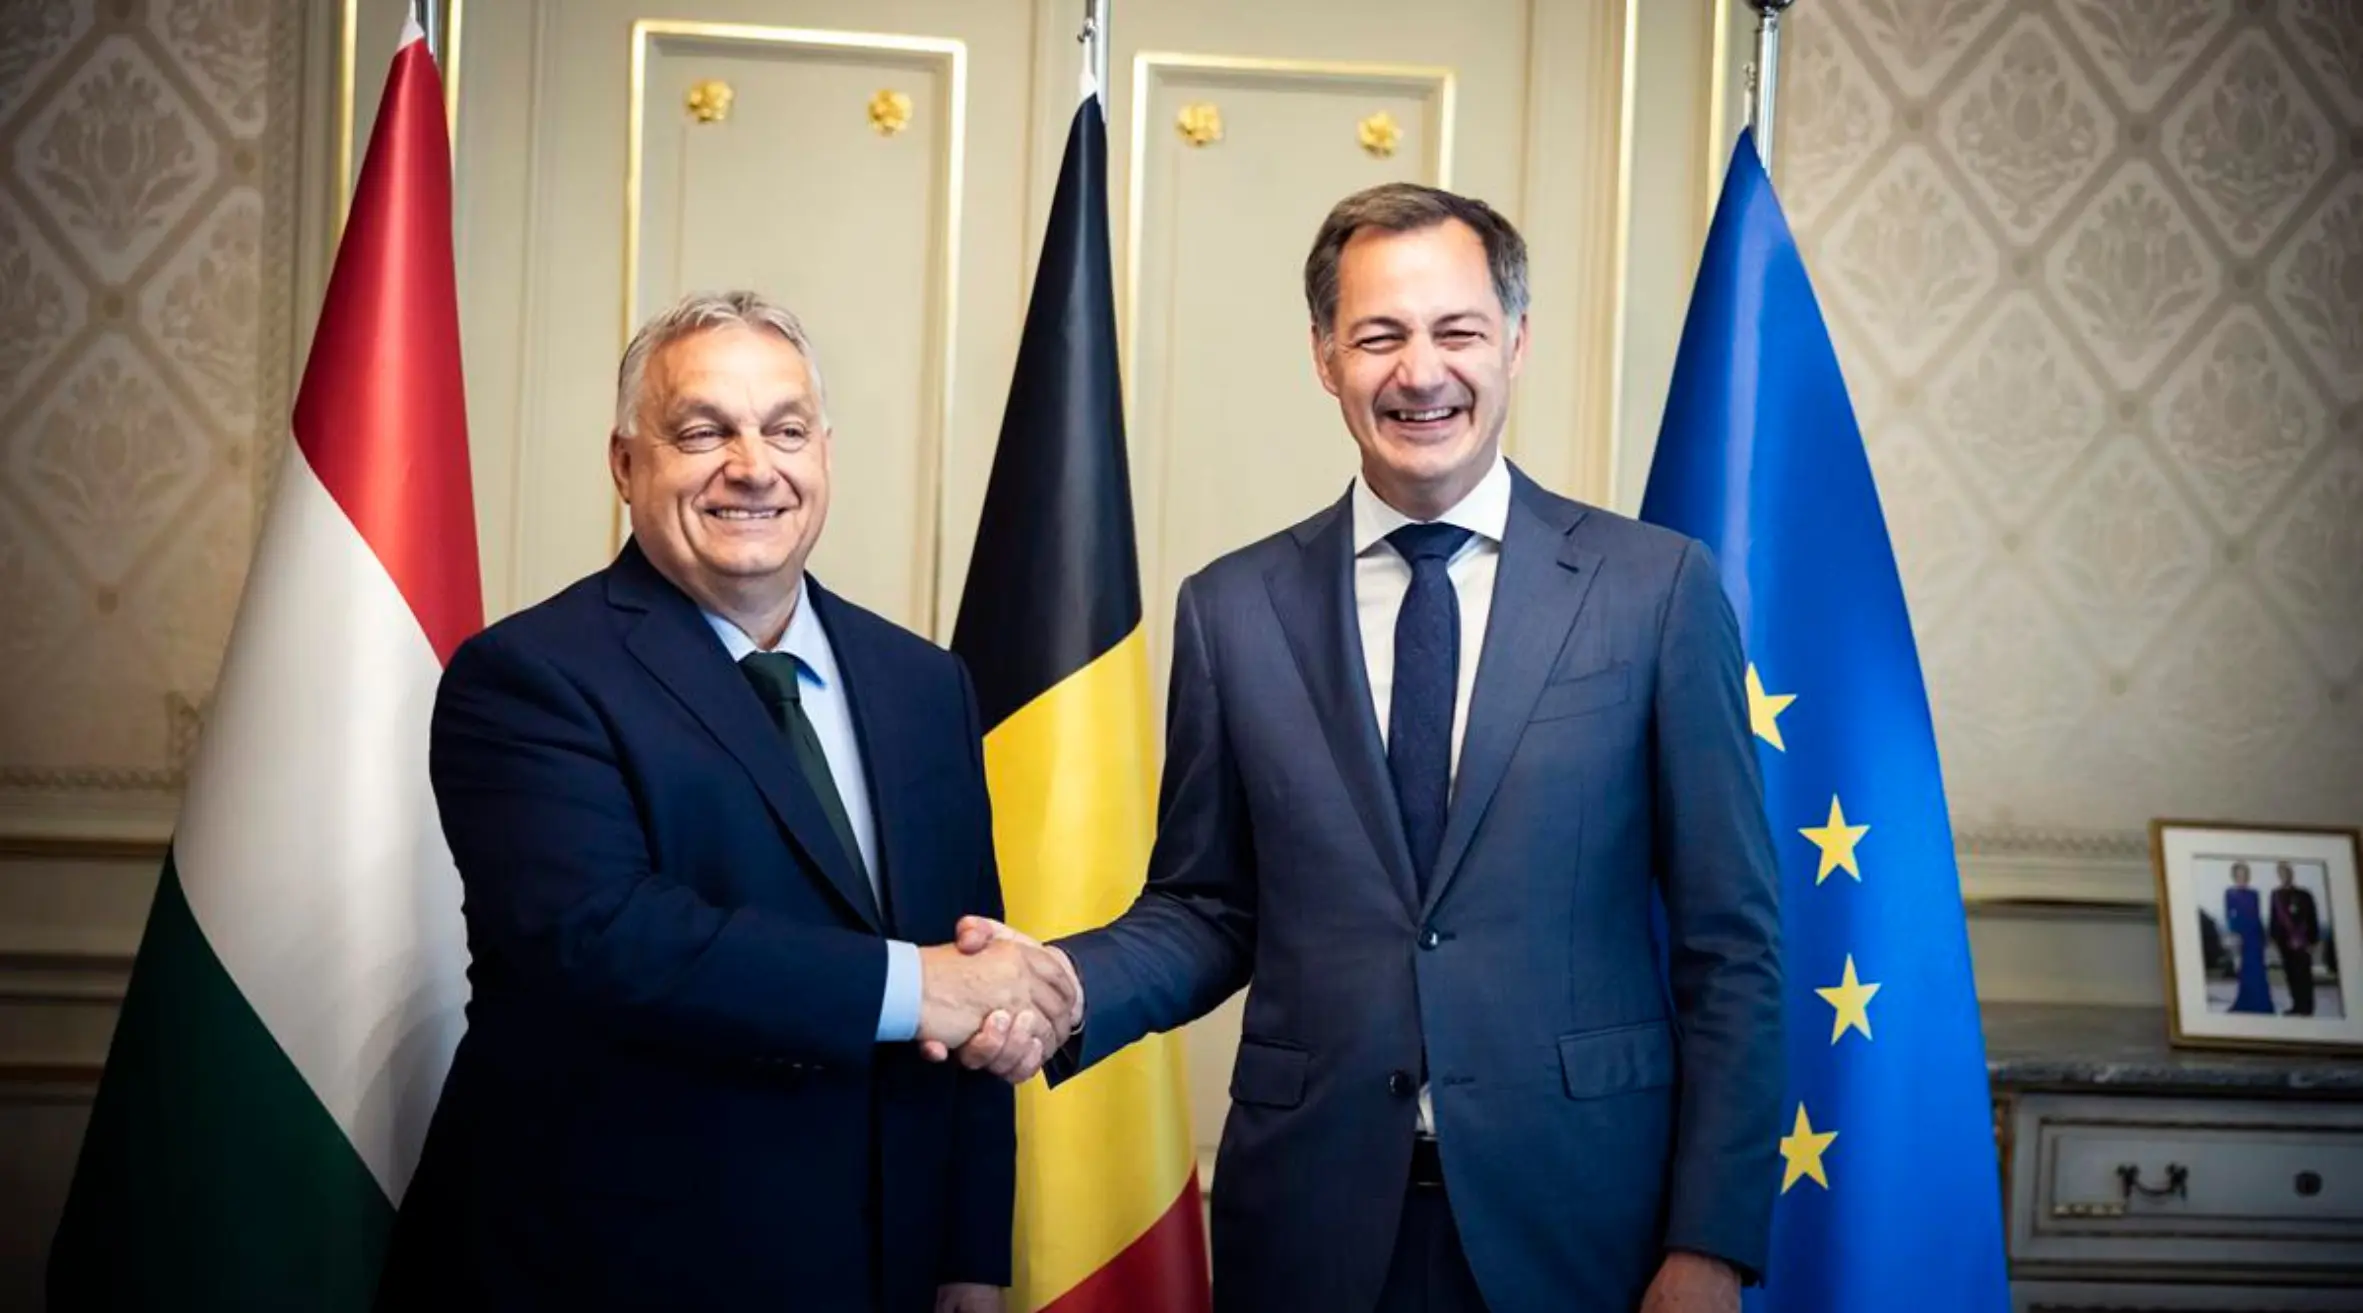 Belgian PM De Croo hands over EU presidency to Orbán